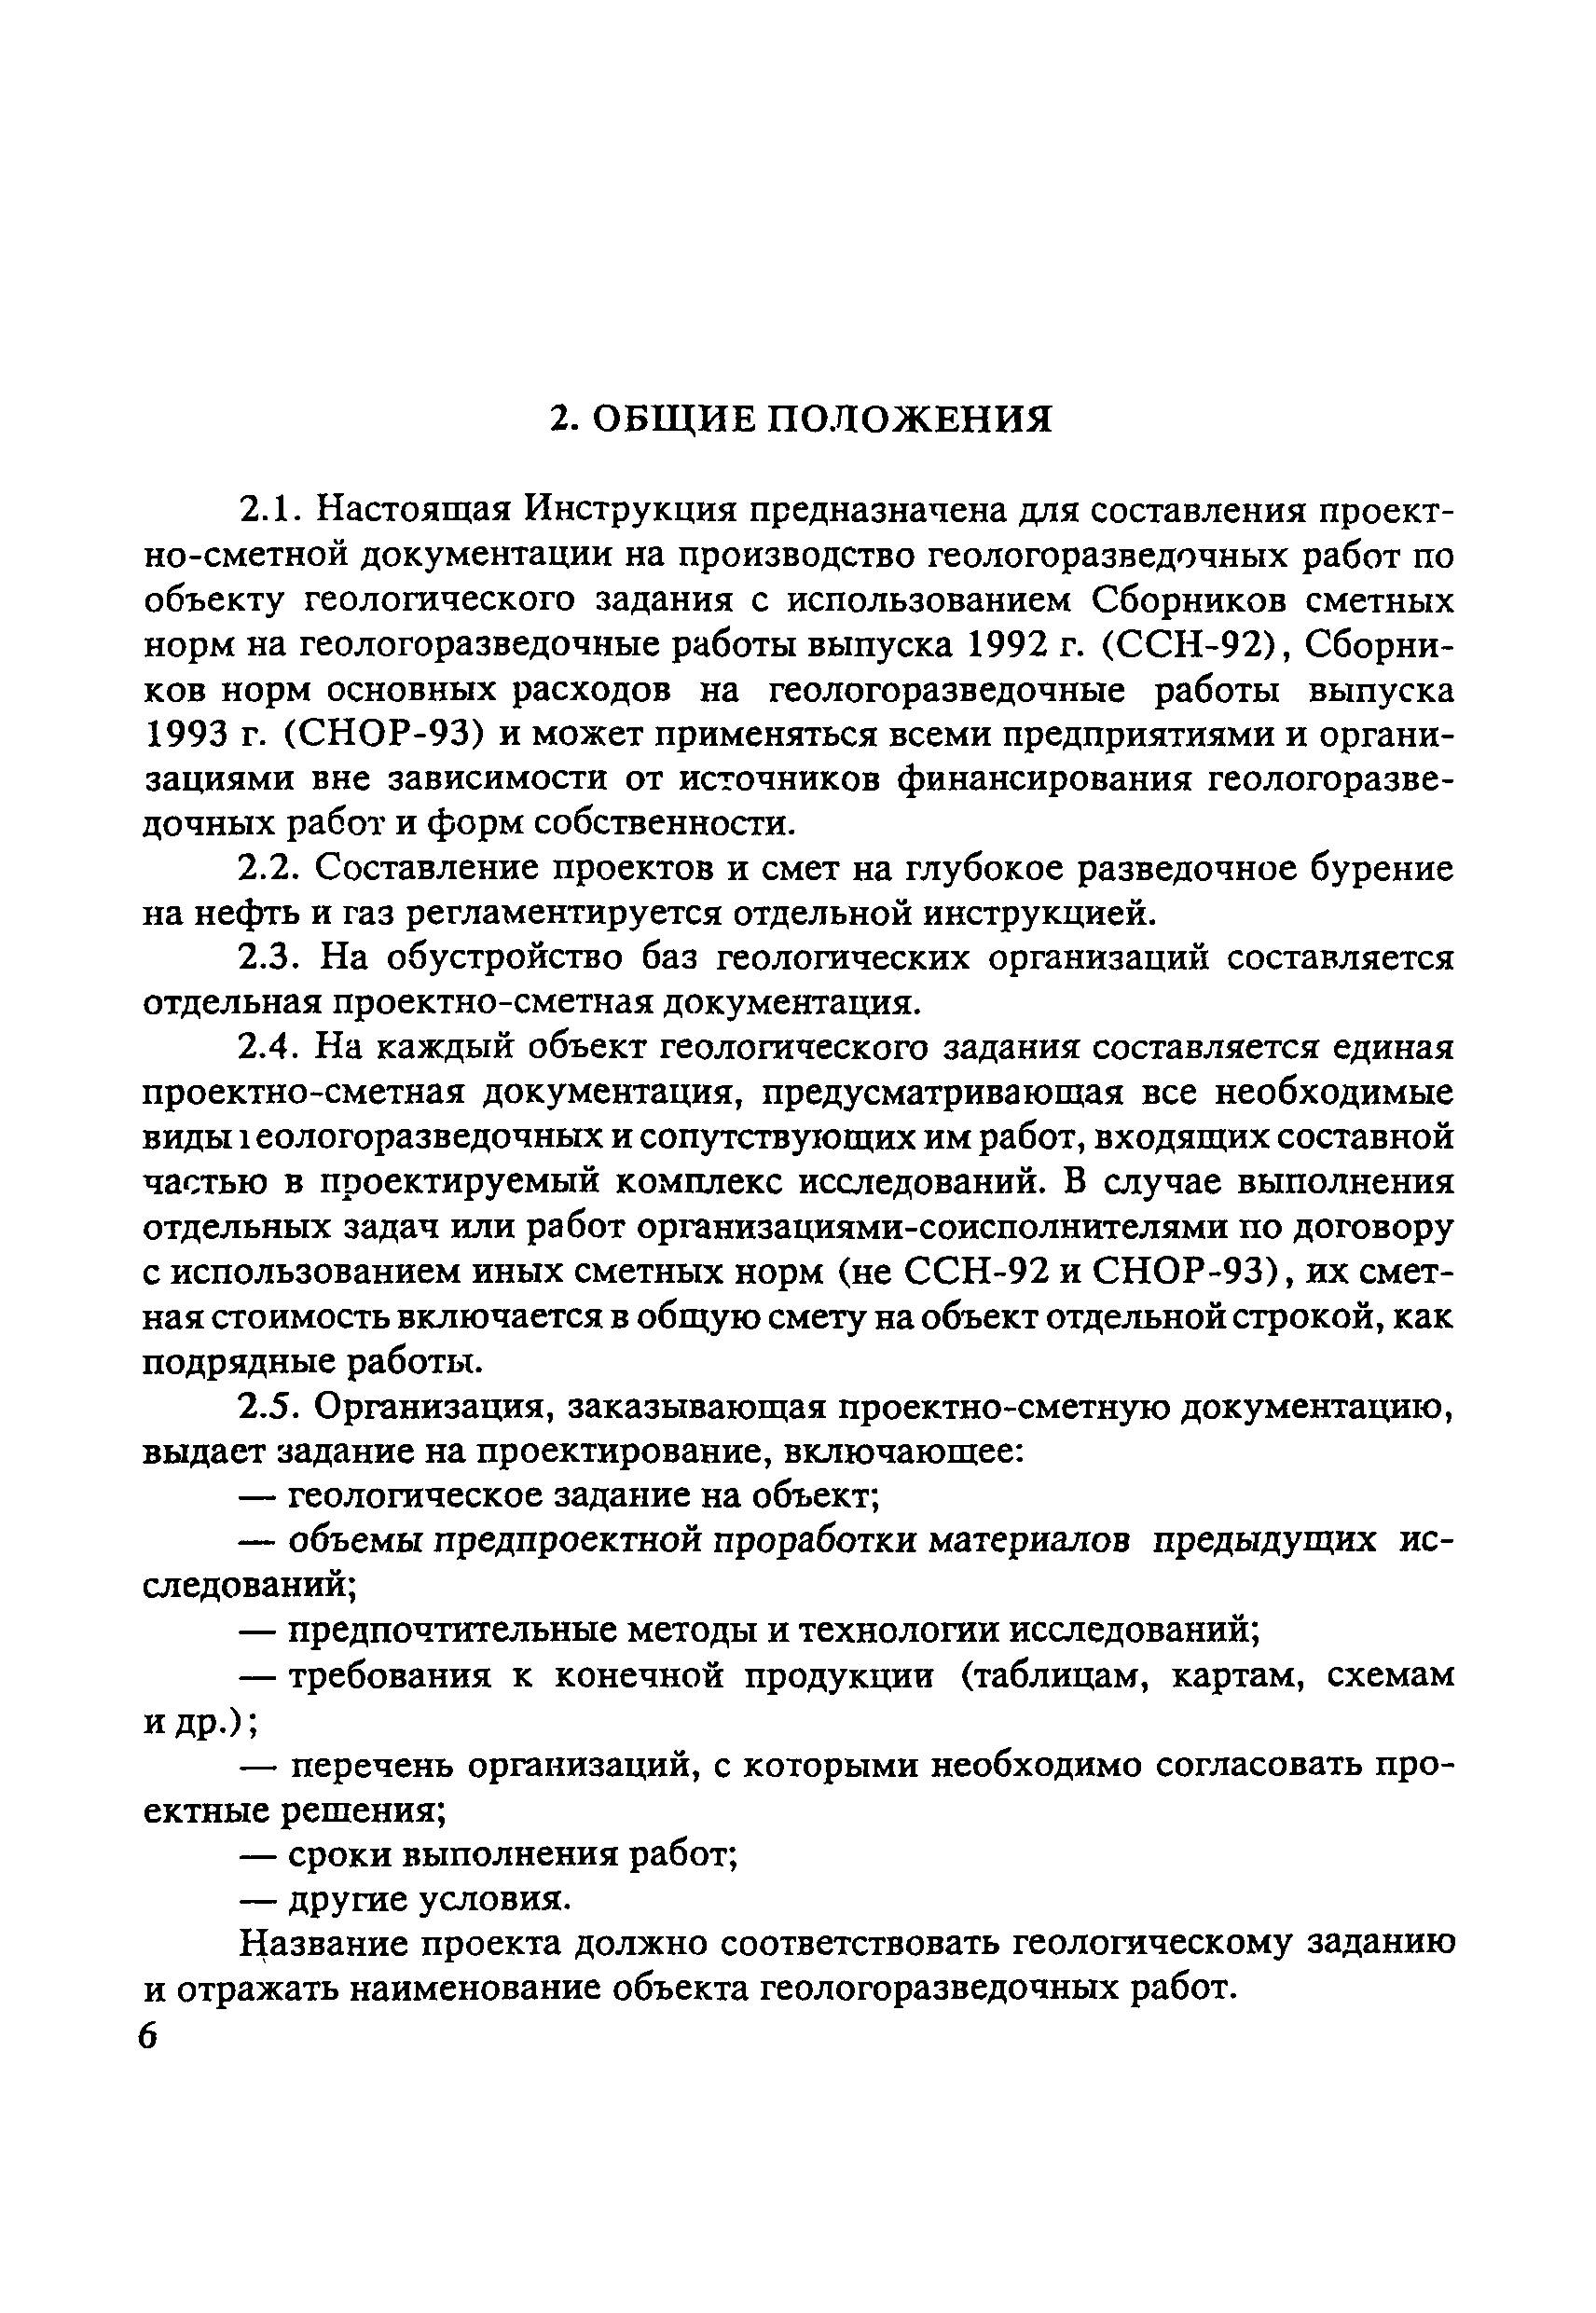 Скачать Инструкция По Составлению Проектов И Смет На.